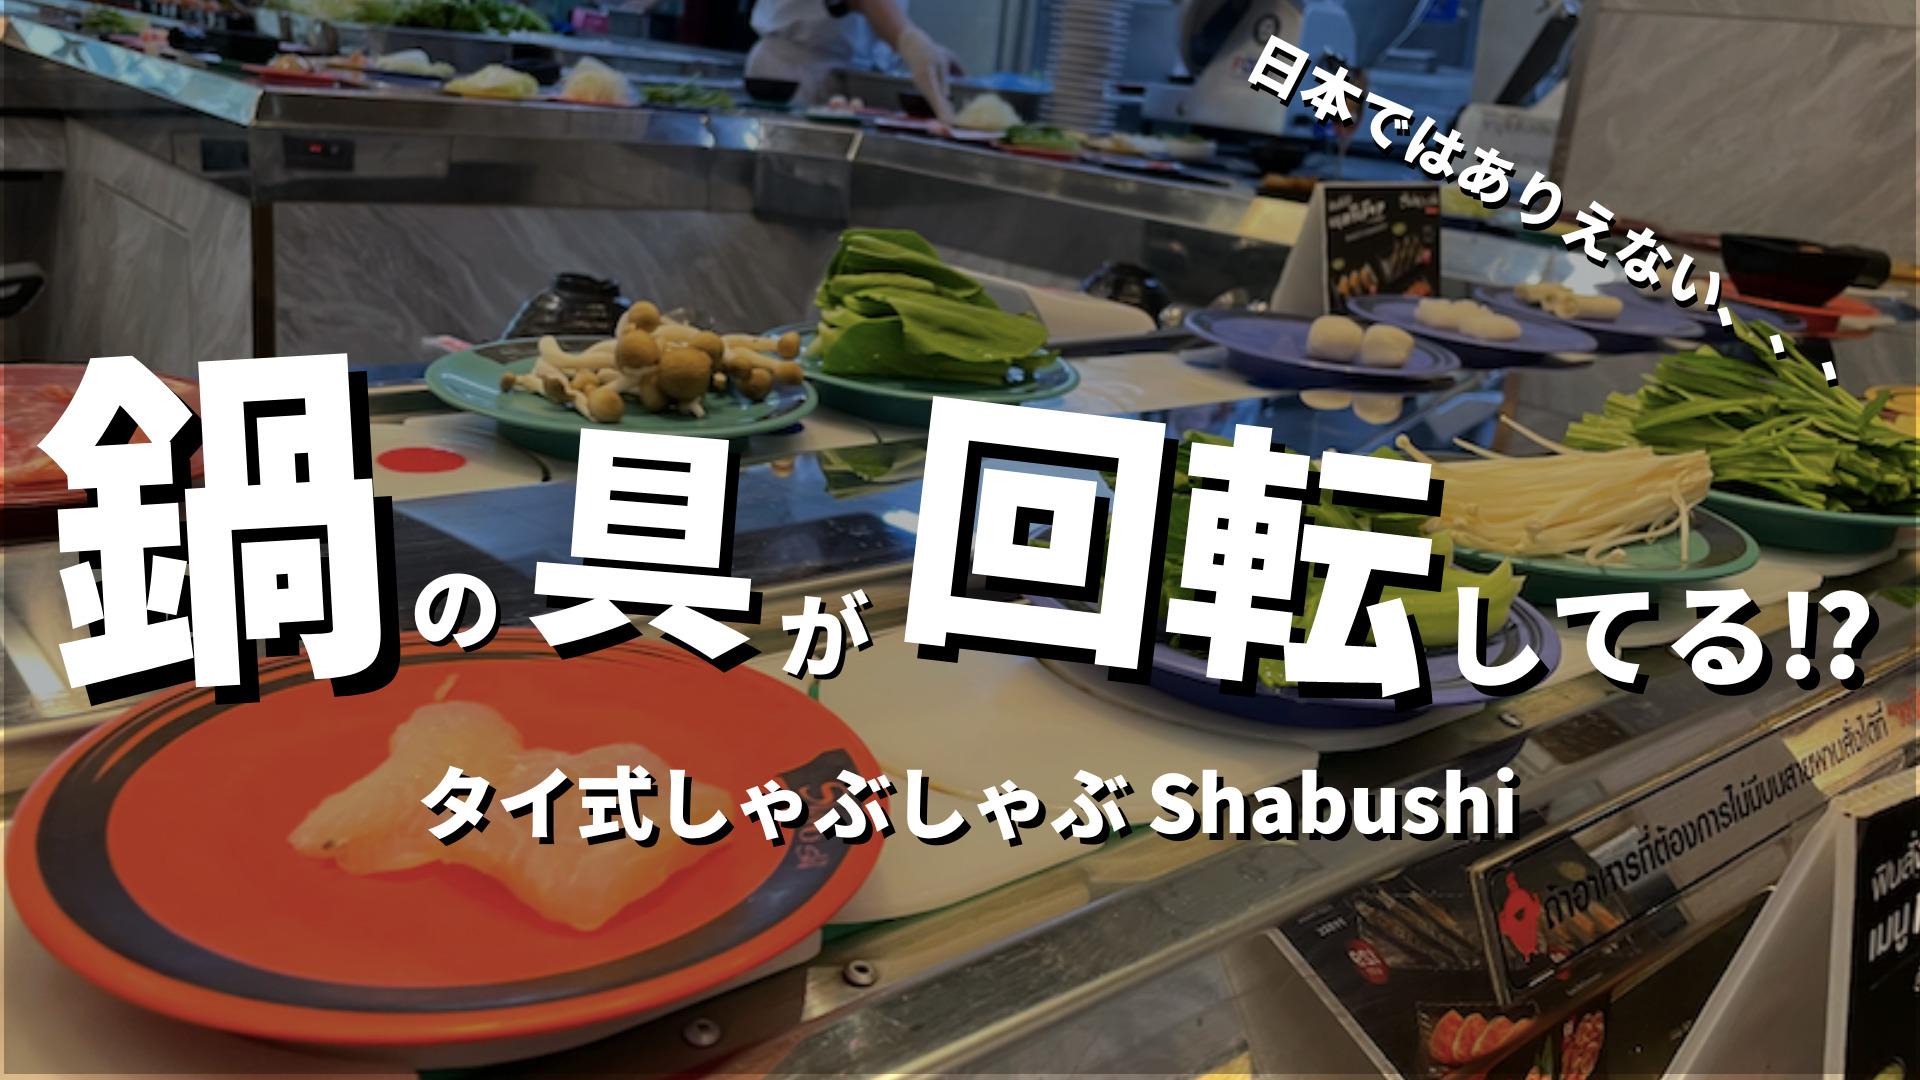 shabushi